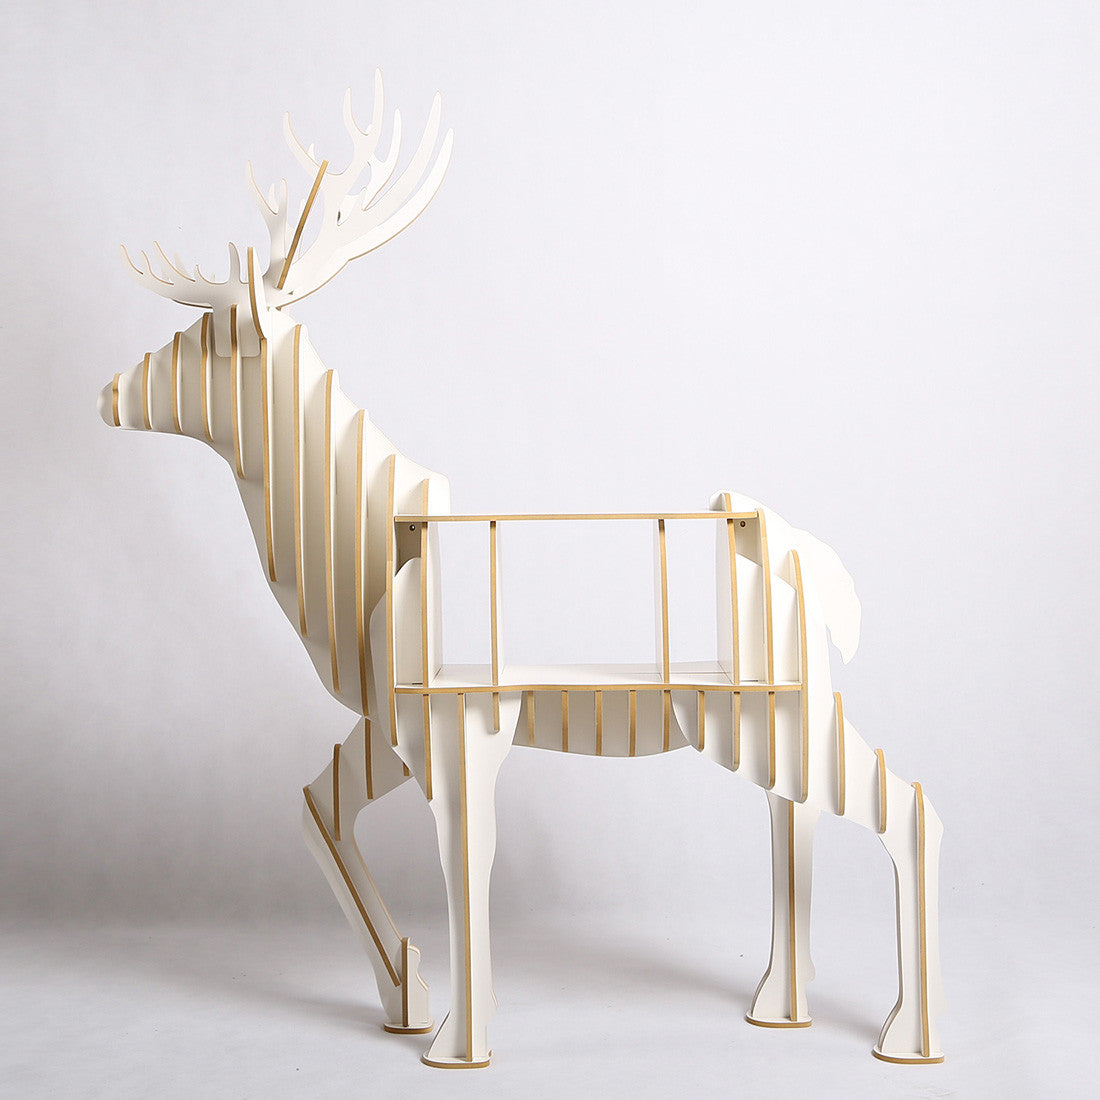 Deer art cabinet